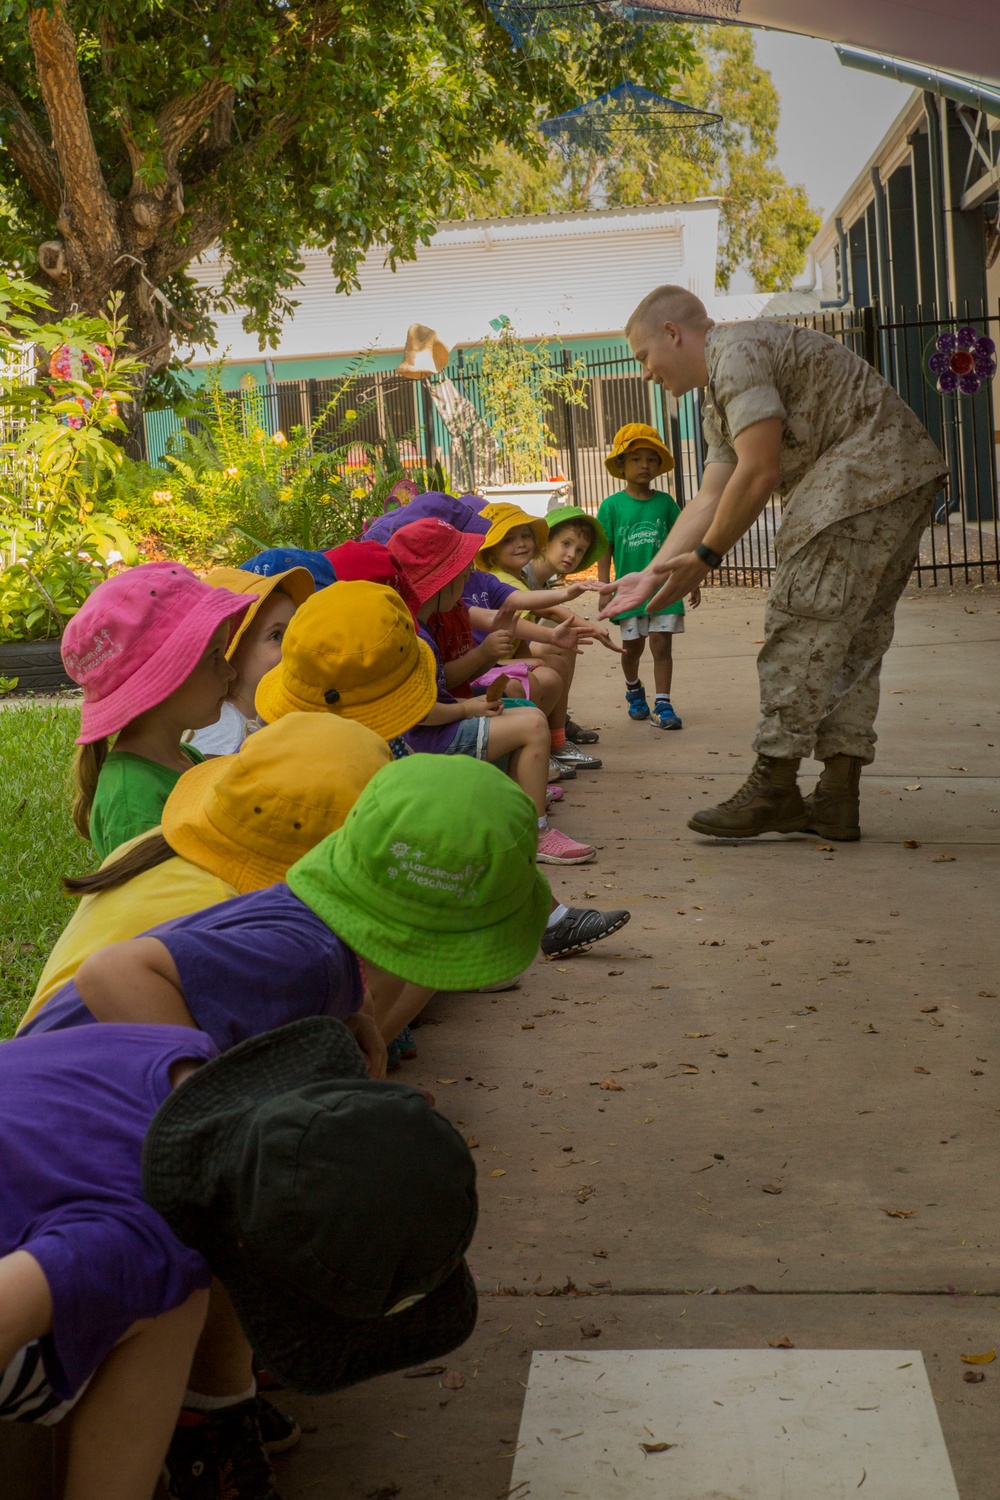 Marines volunteer at primary school